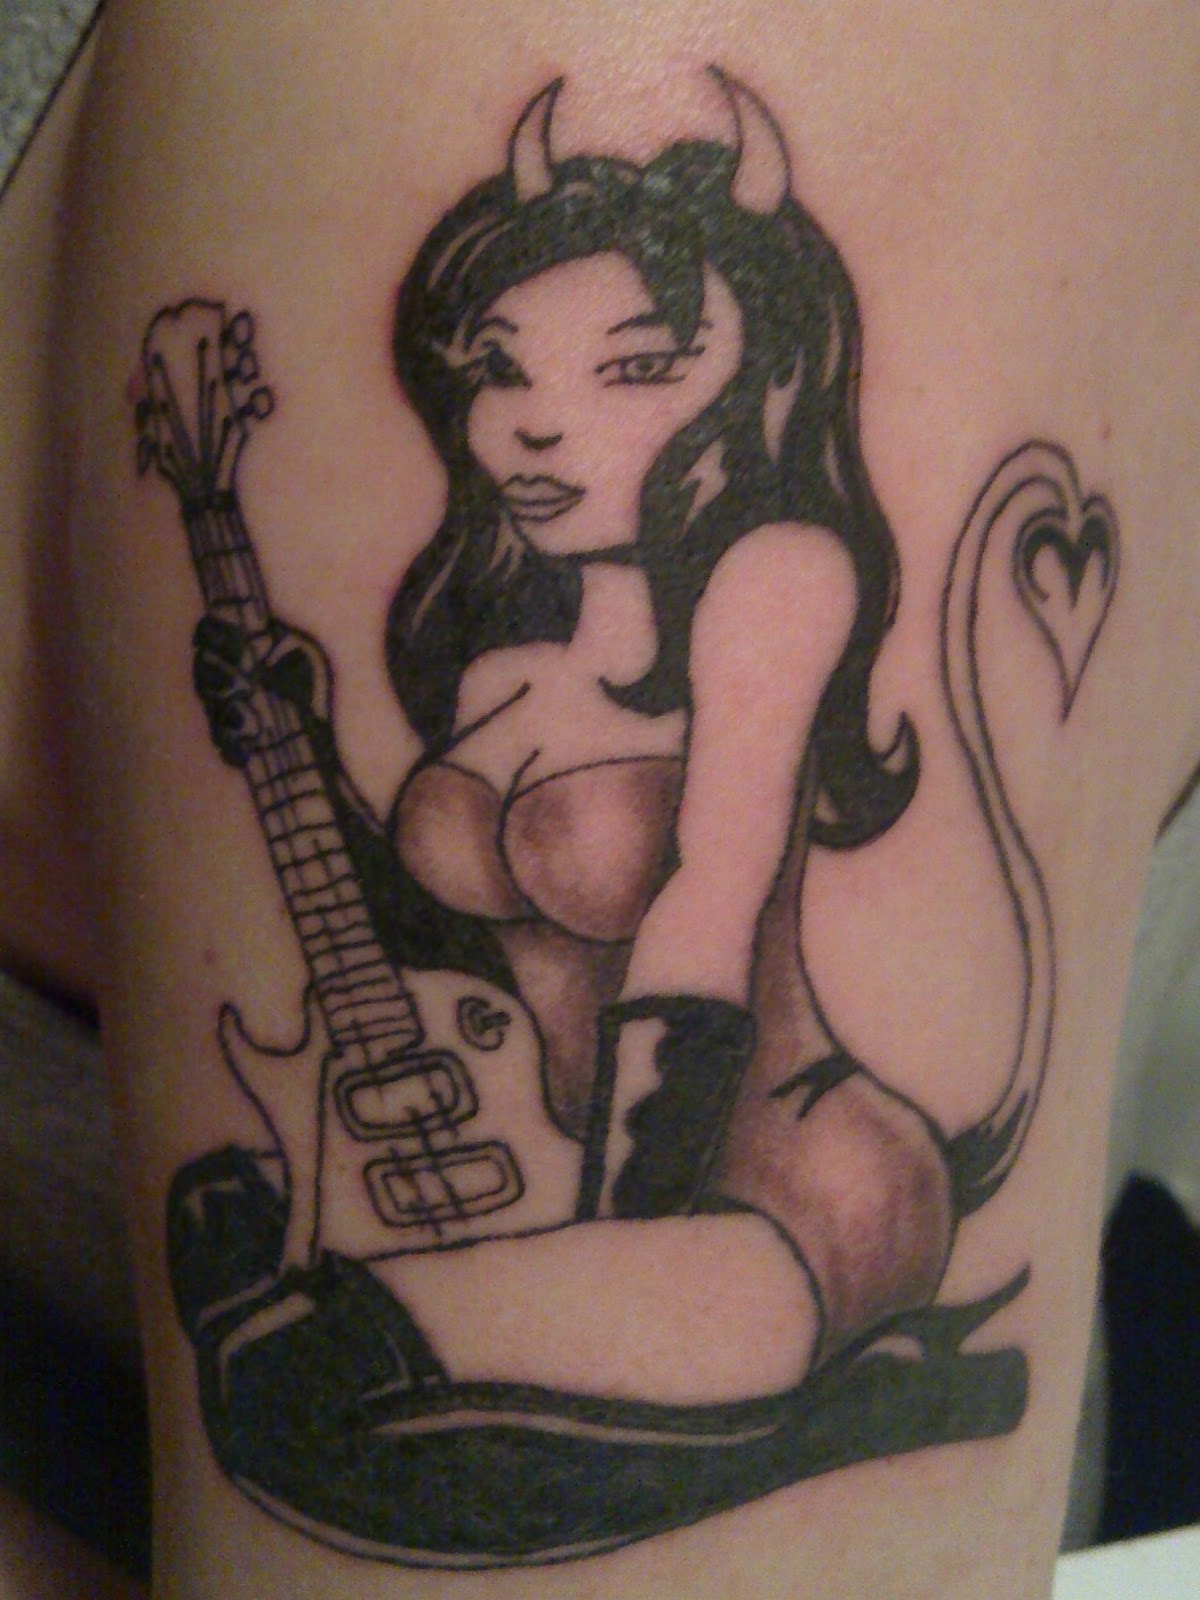 http://4.bp.blogspot.com/-pO4l2pvaVXY/T2jzB7vQOeI/AAAAAAAACEA/ubMN7sQkDIE/s1600/Devil_Girl_tattoo.jpg